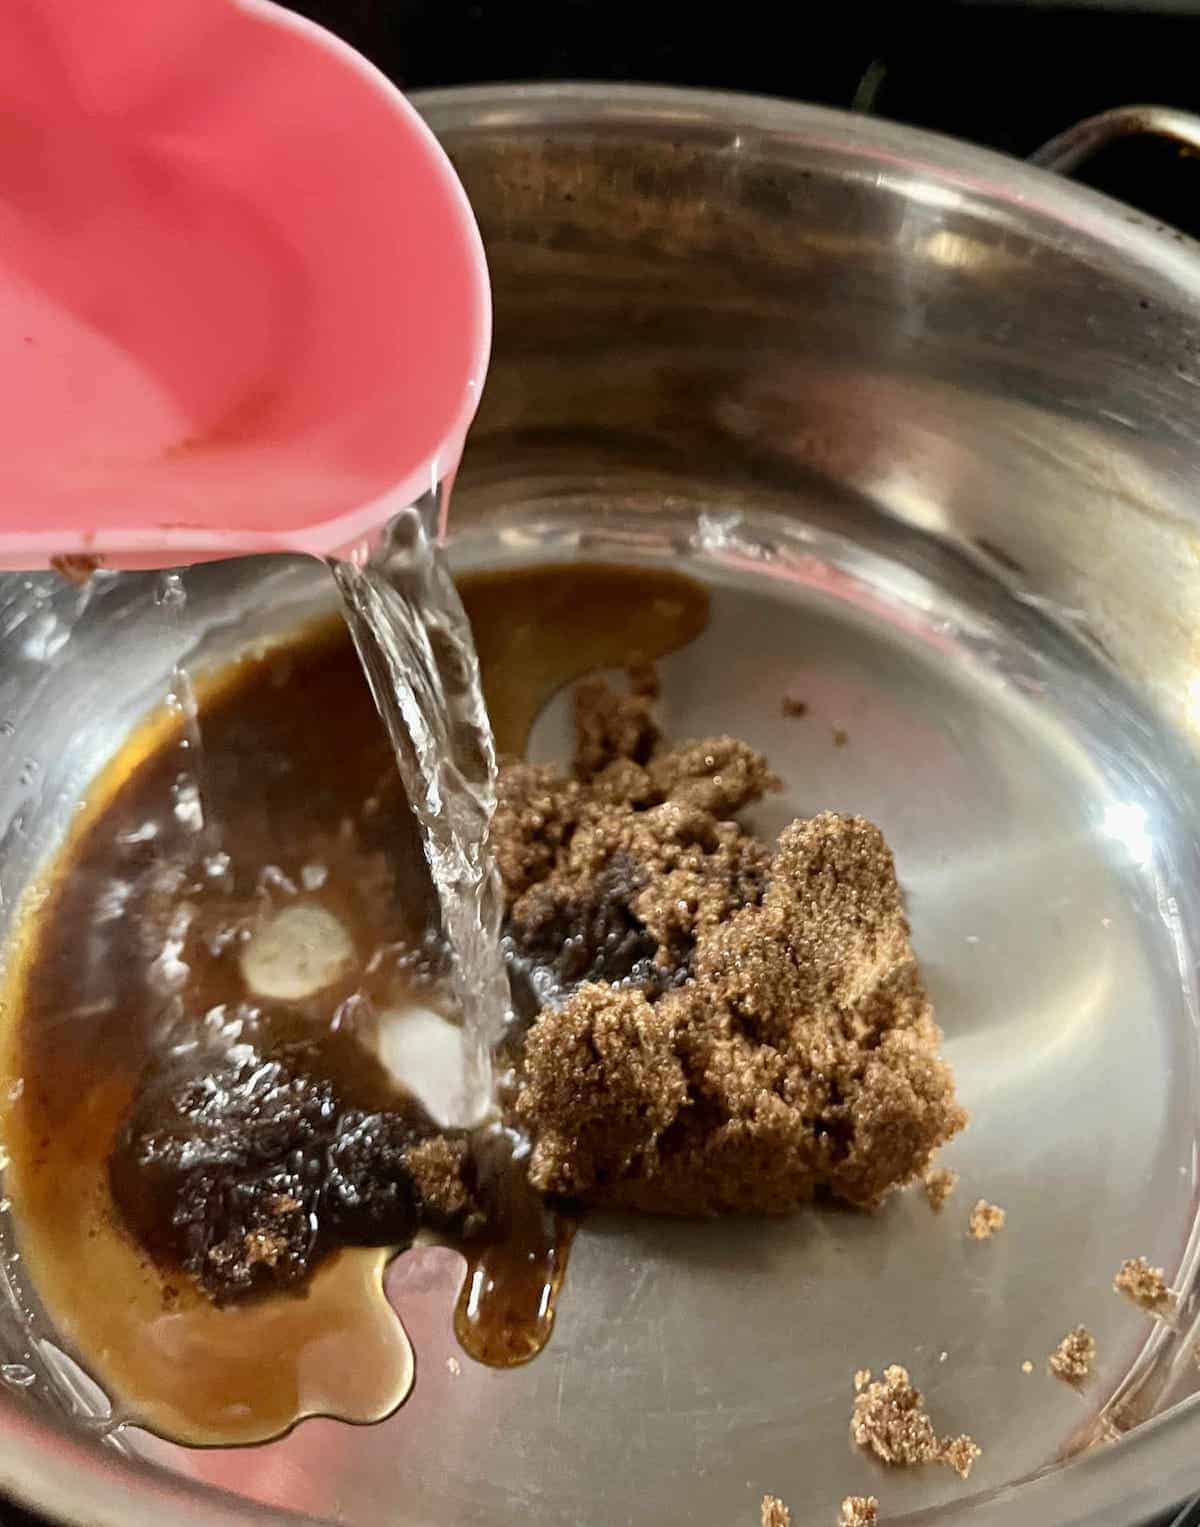 Melting brown sugar and water to make brown sugar syrup.